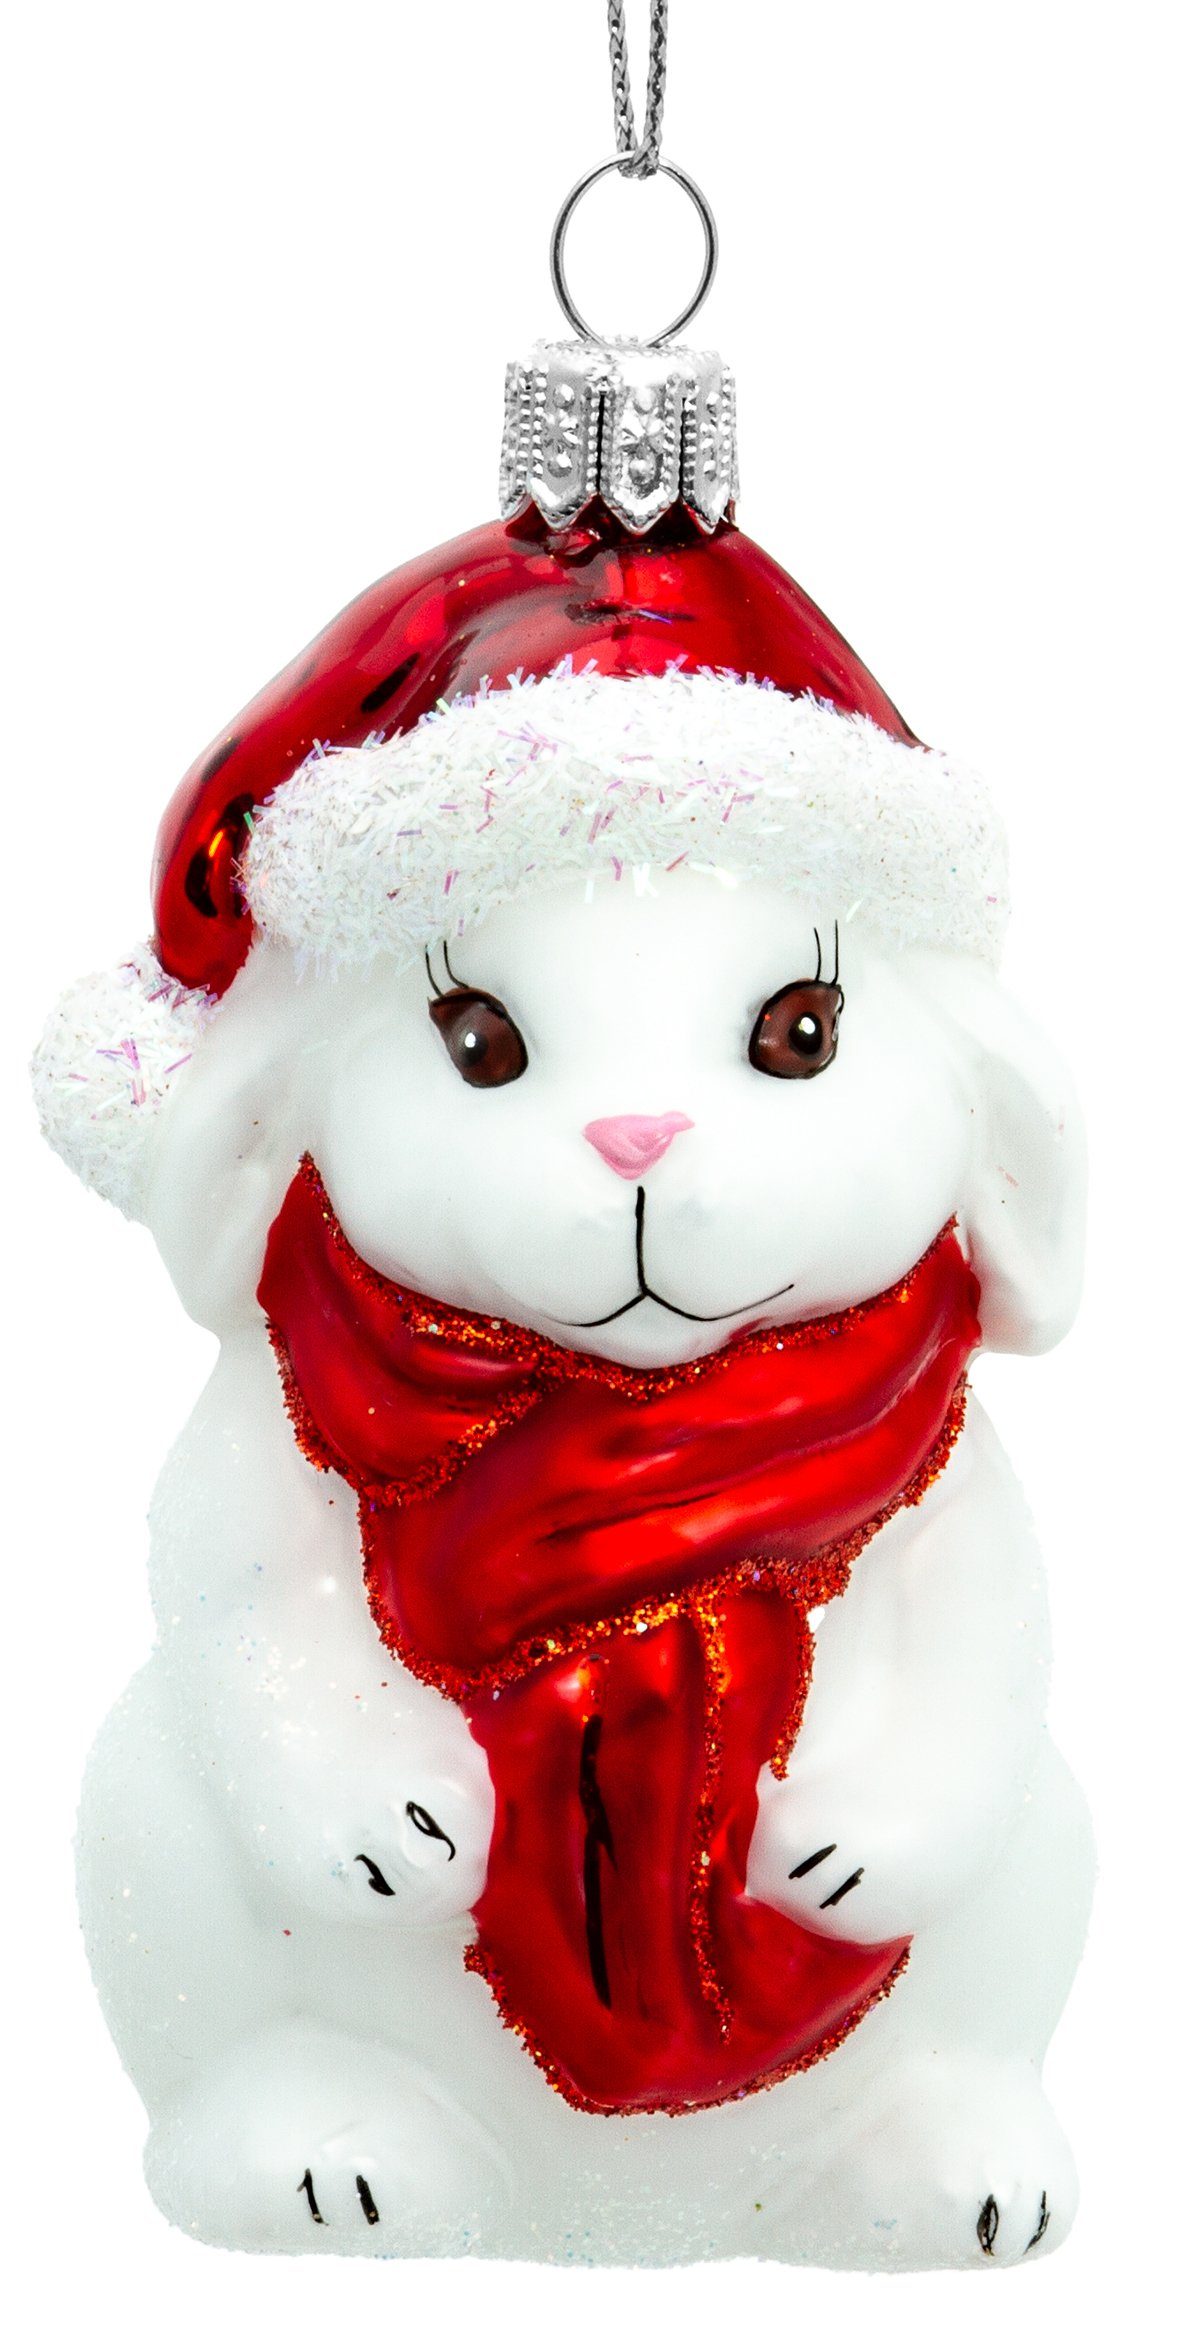 SIKORA Christbaumschmuck BS711 Hase mit Weihnachtsmütze Glas Figur Weihnachtsbaum Anhänger - Premium Line weiß